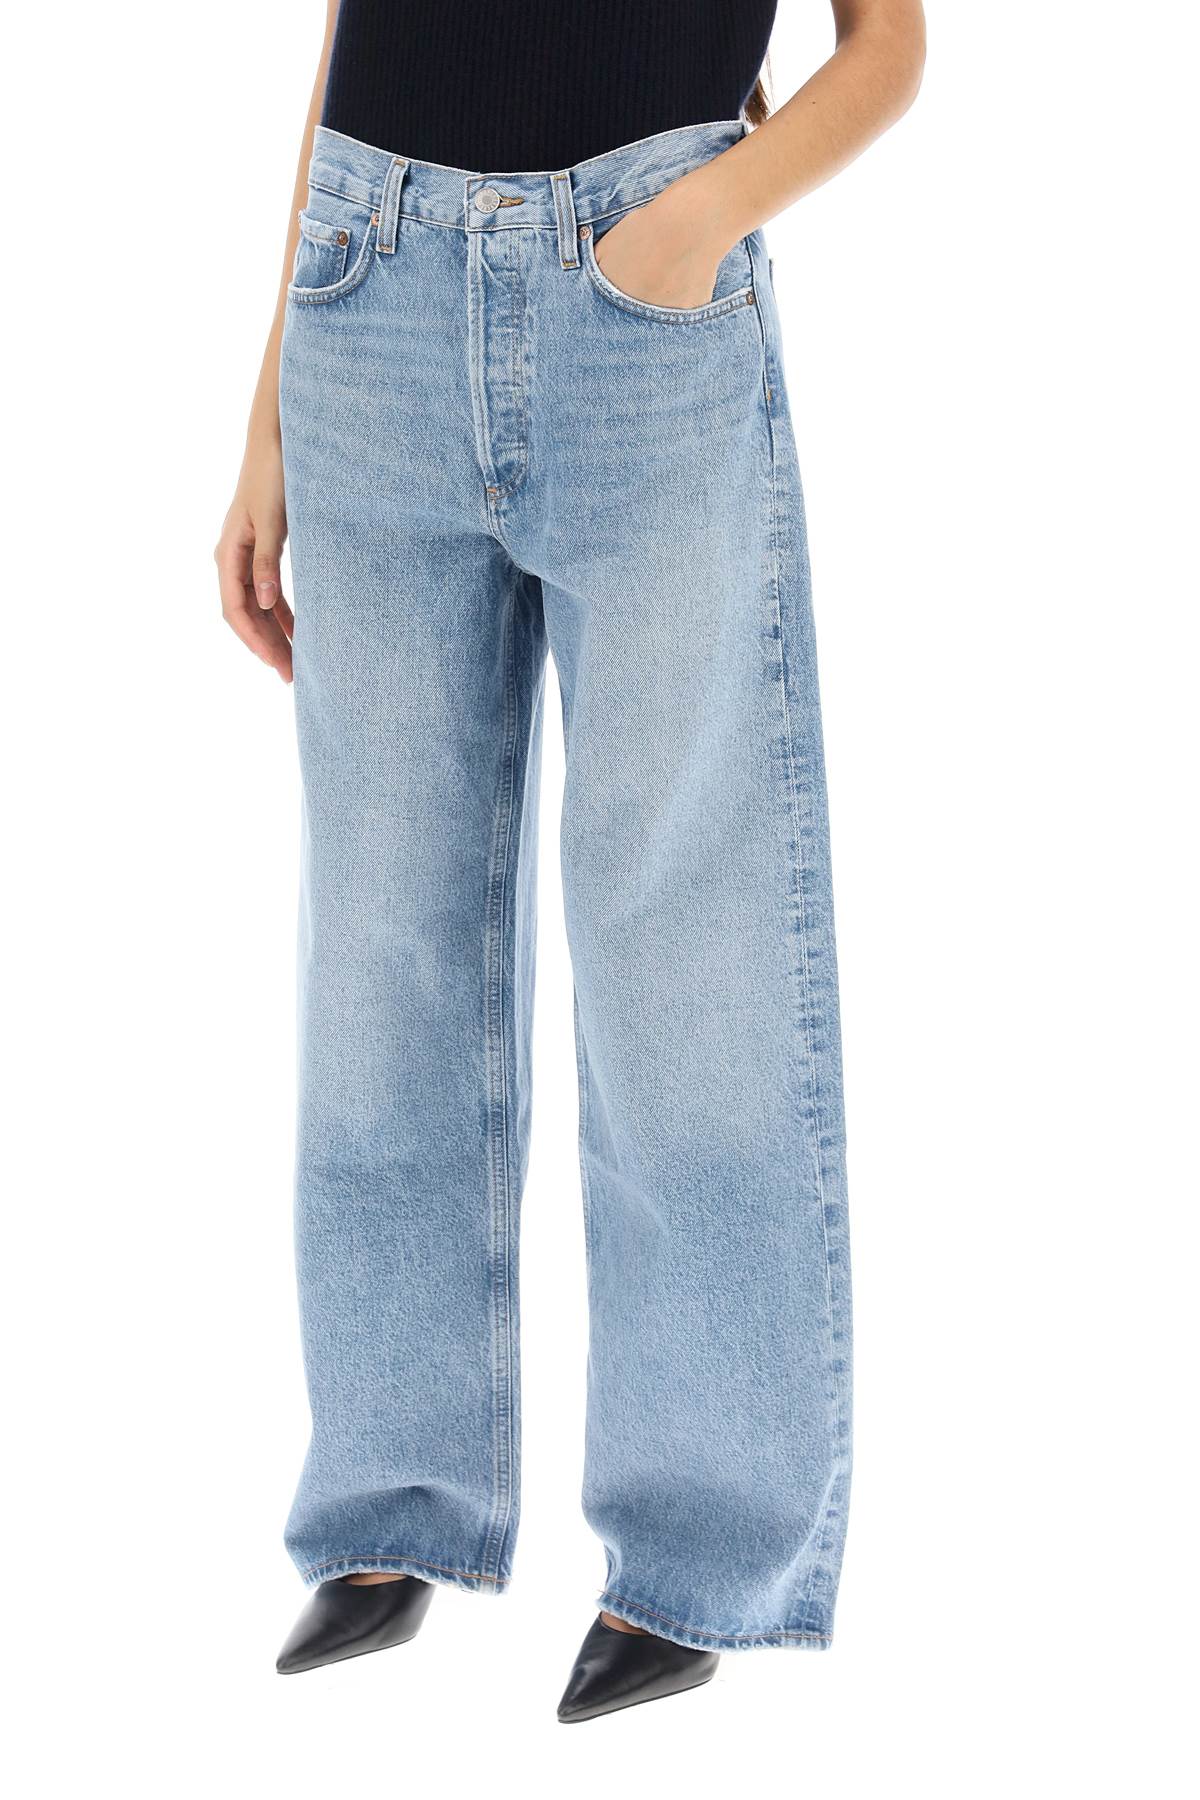 Agolde low slung baggy jeans-3